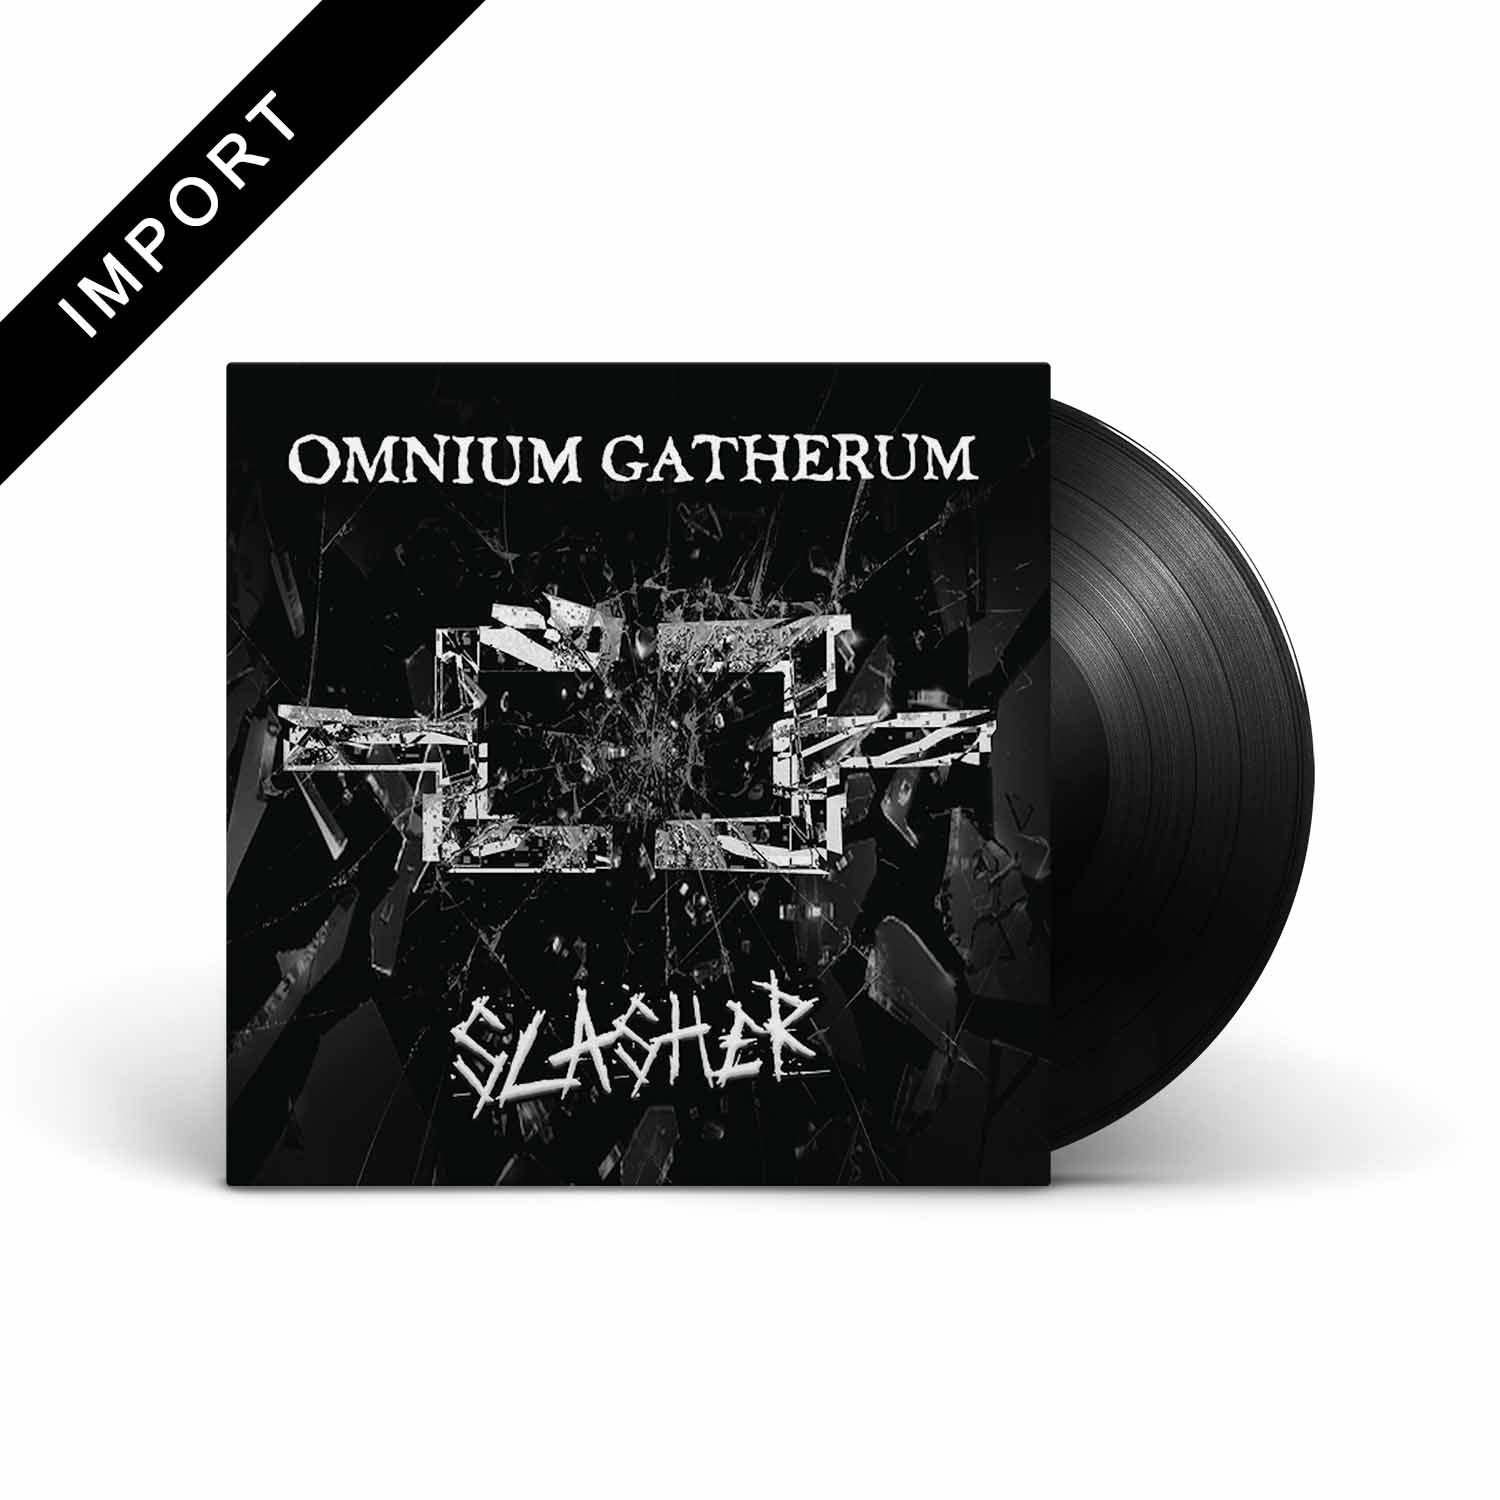 OMNIUM GATHERUM - Slasher - EP - LP